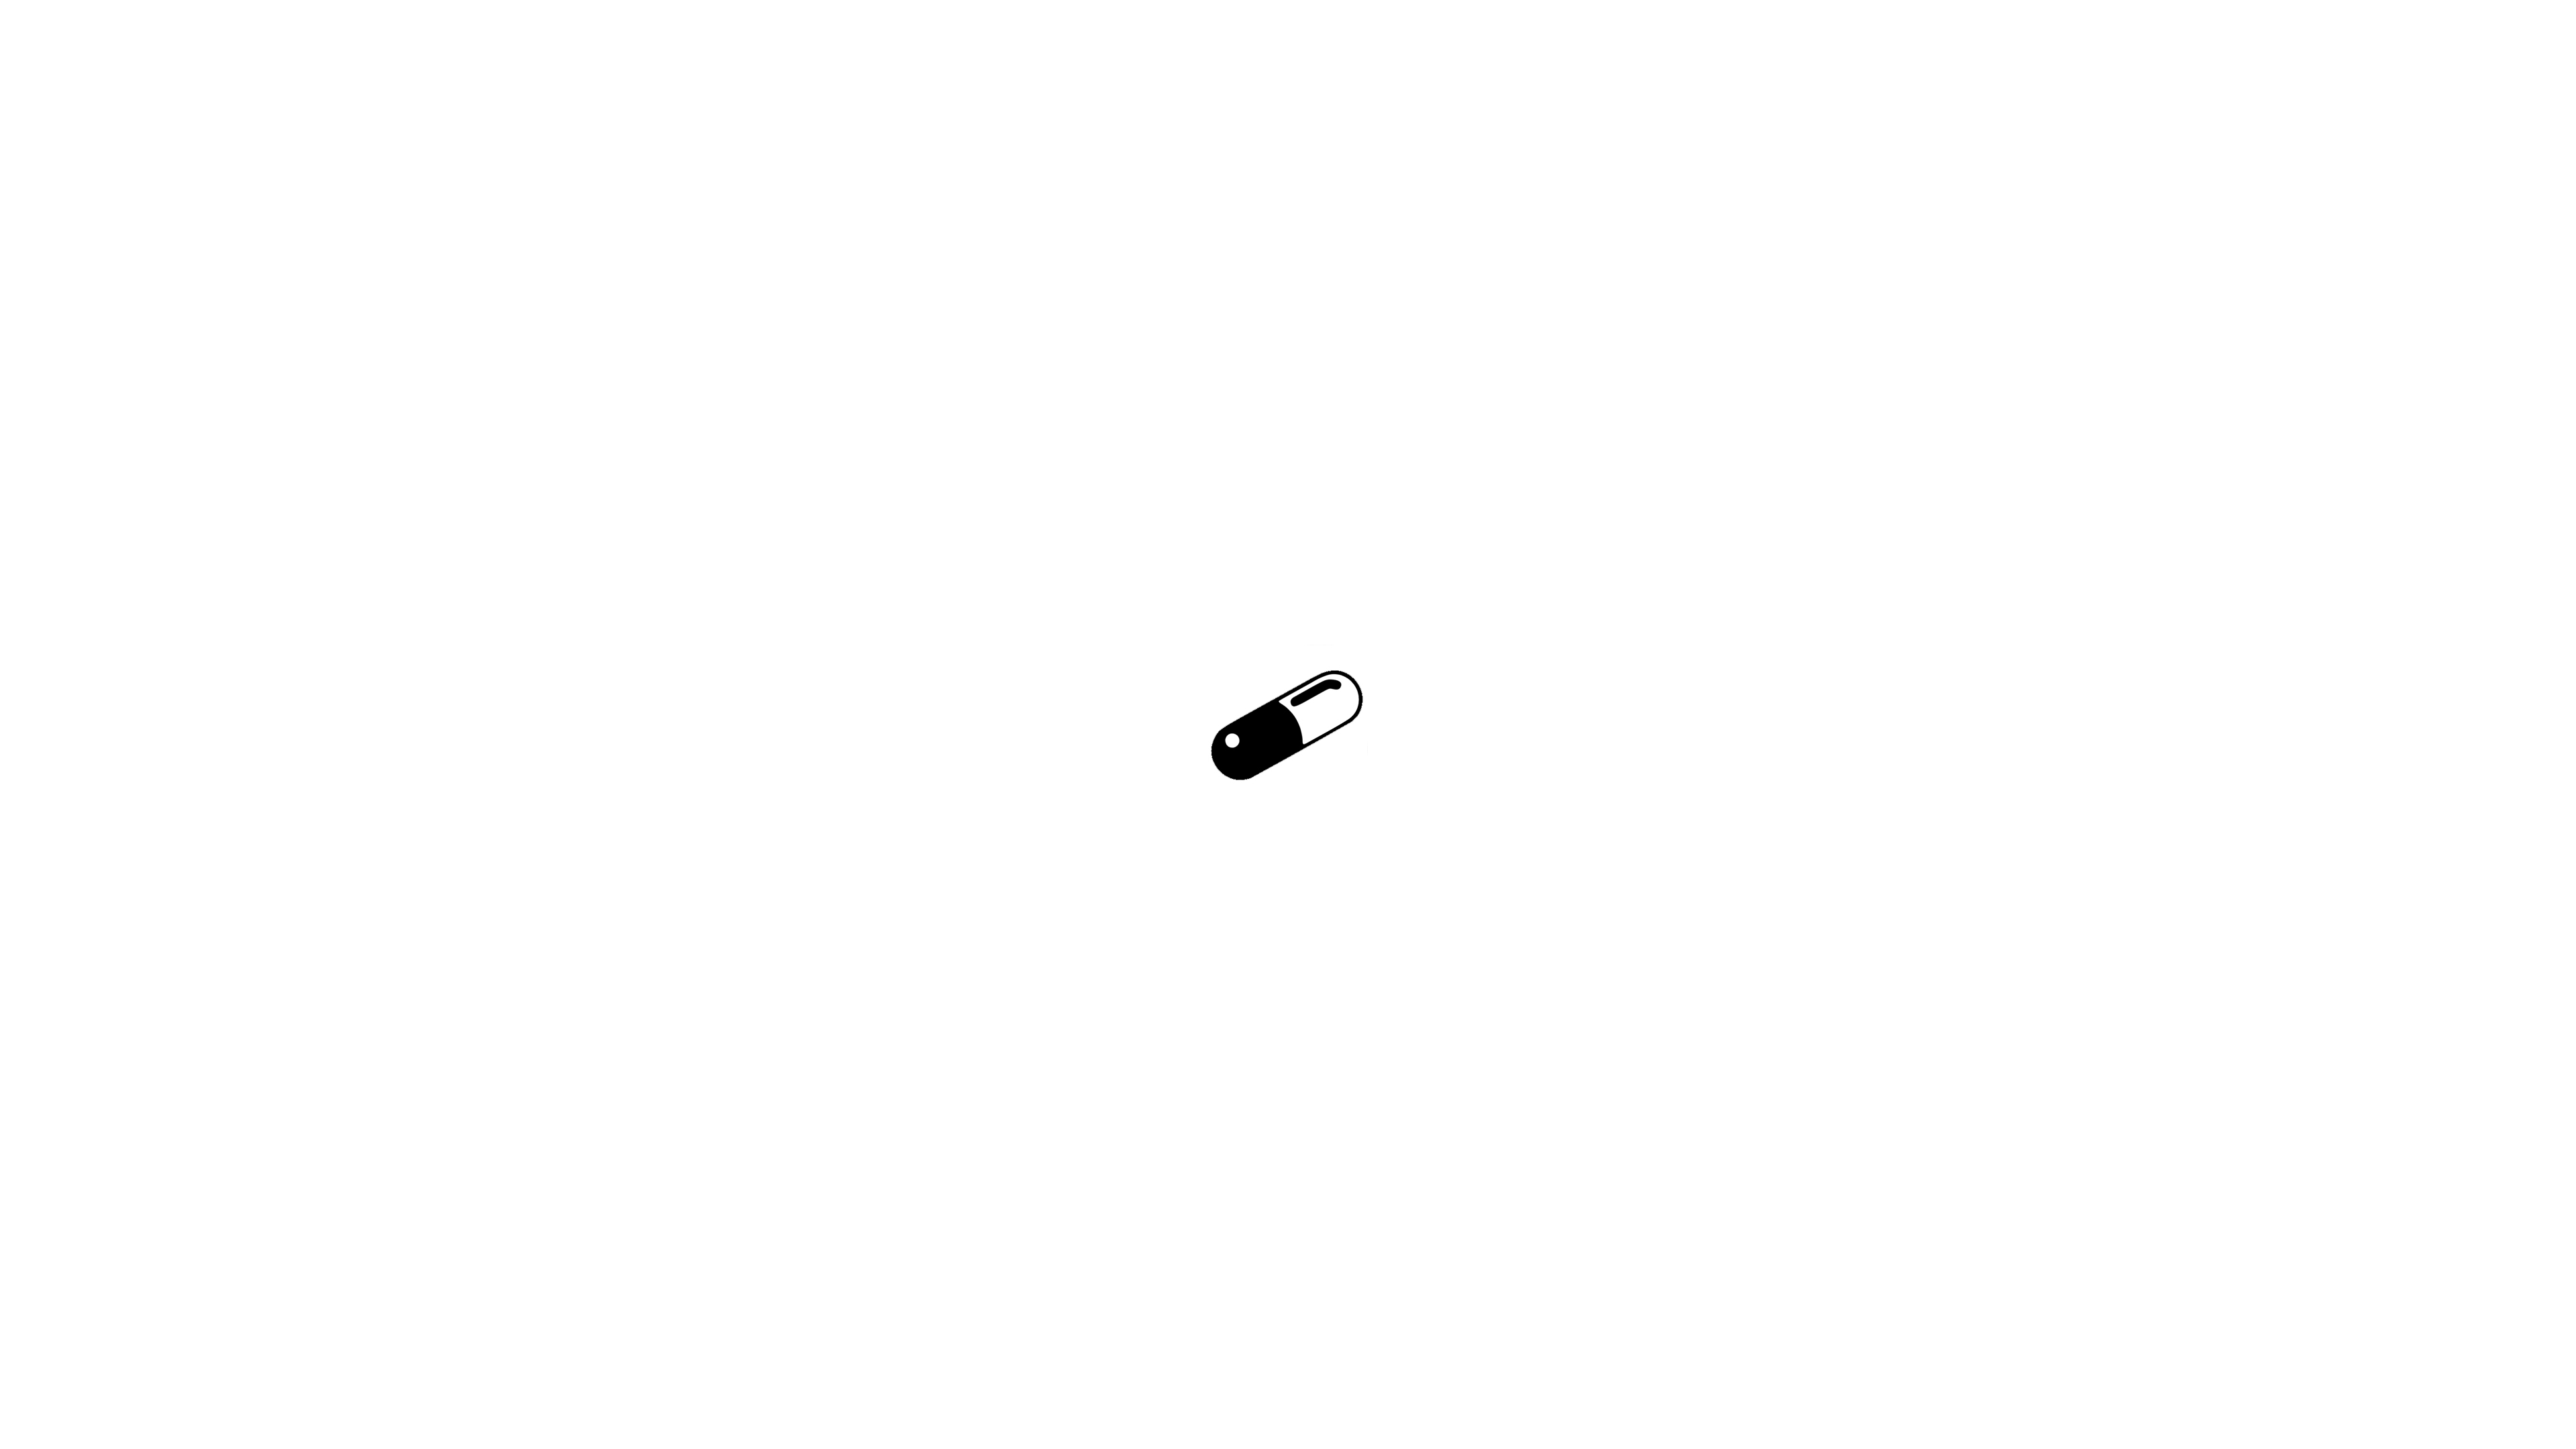 General 3840x2160 pills monochrome minimalism